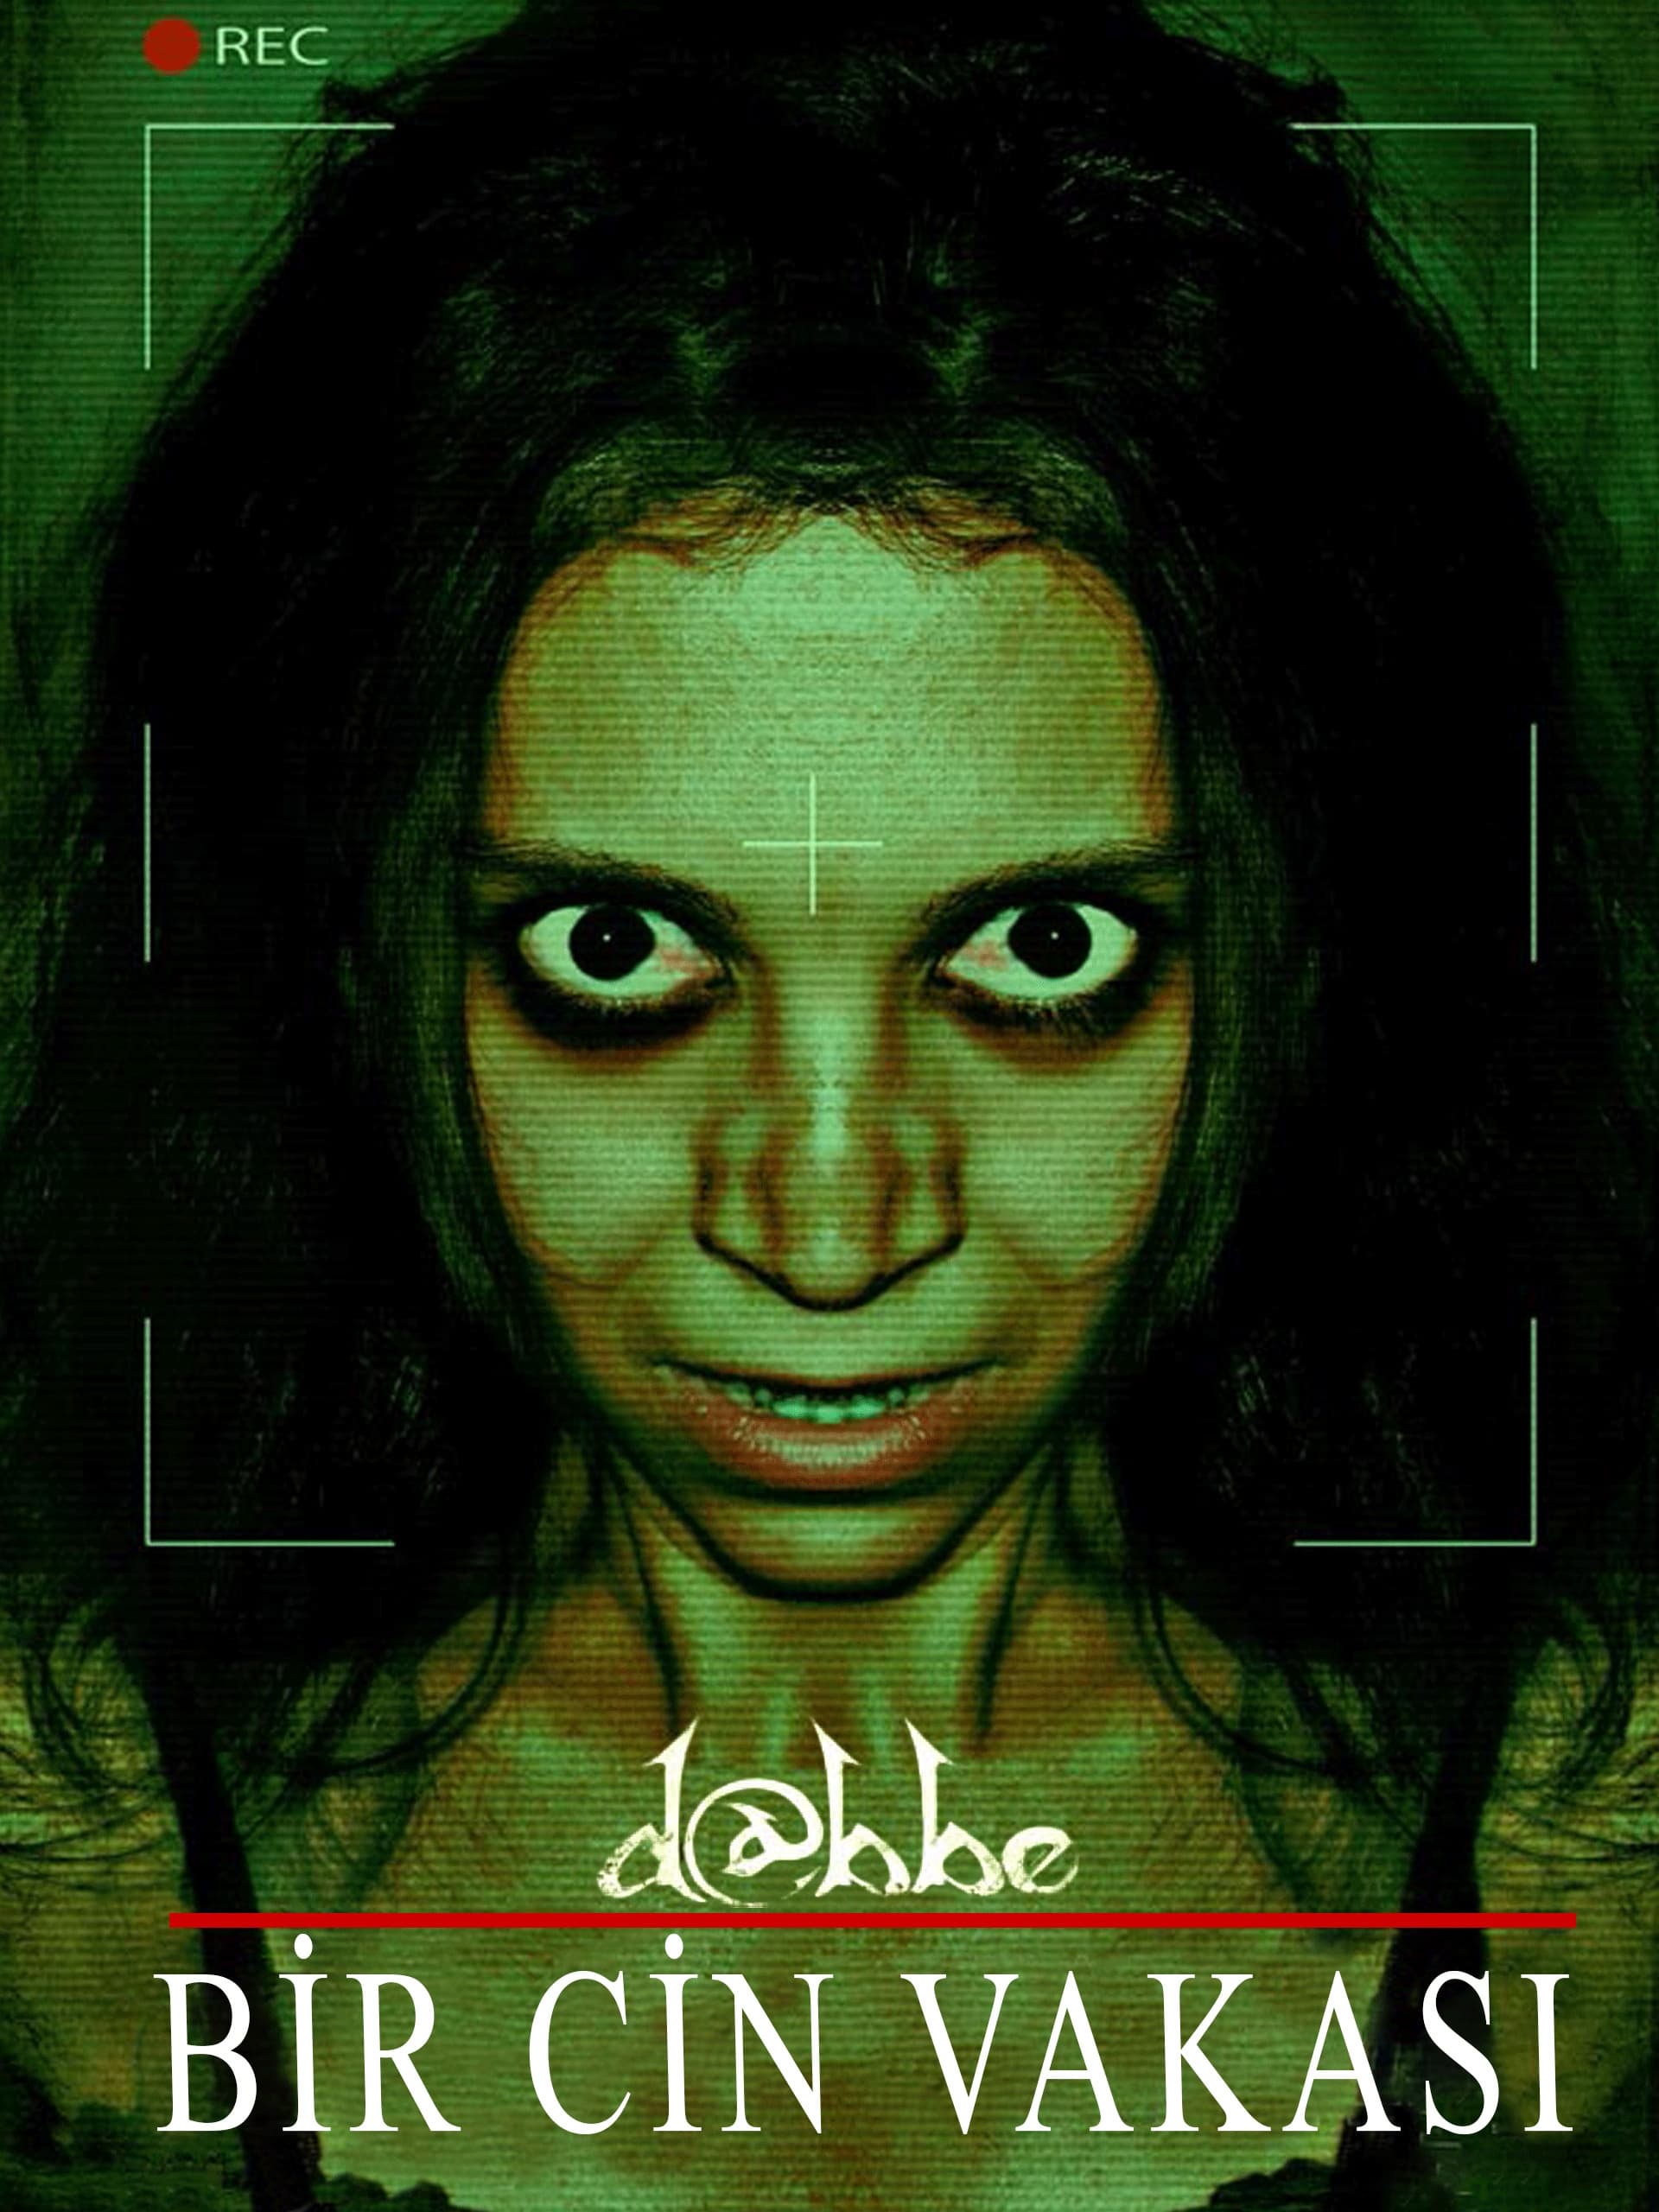 D@bbe: Demon Possession